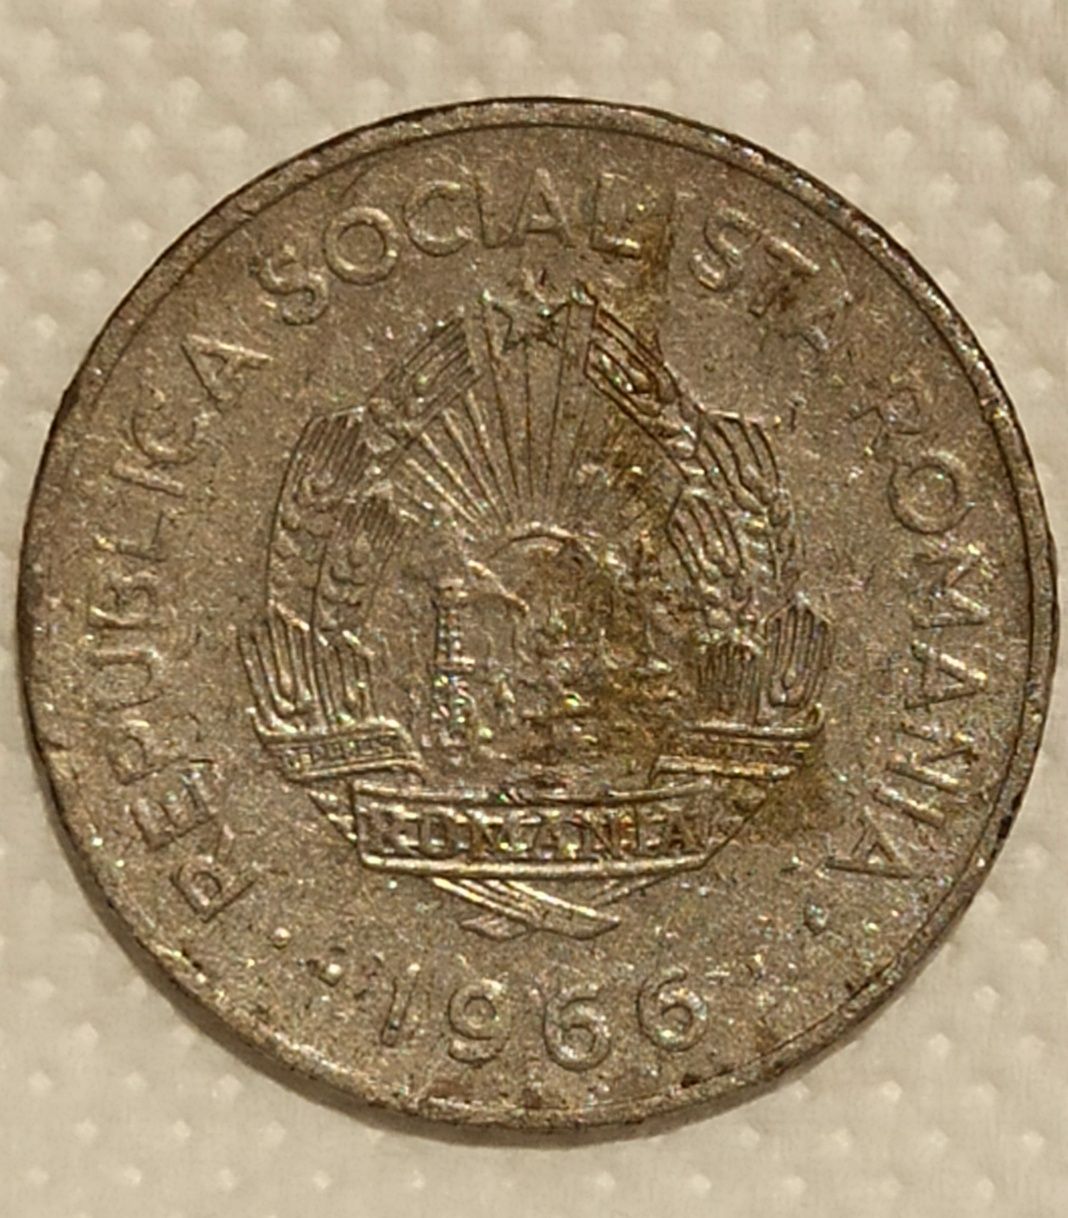 Monedă 1 leu din 1966